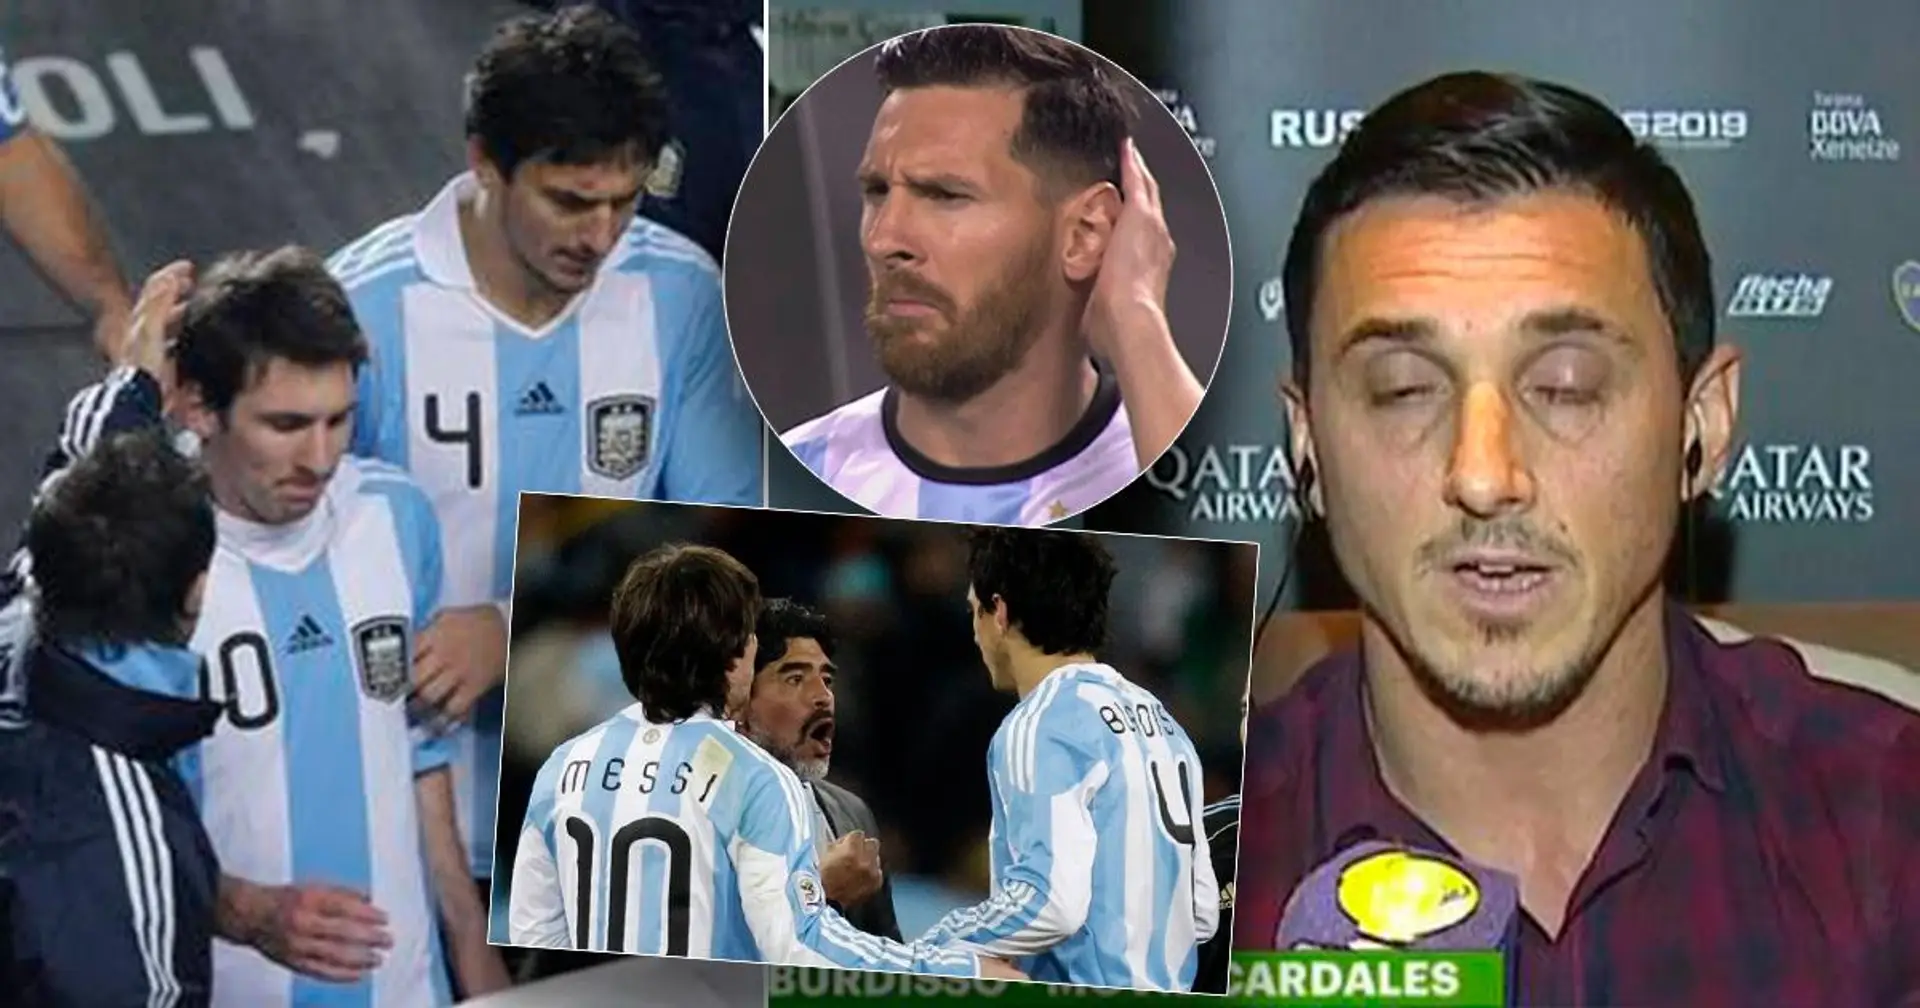 'Yo lo paré': Lo sucedido cuando Messi casi se pelea con su compañero Burdisso